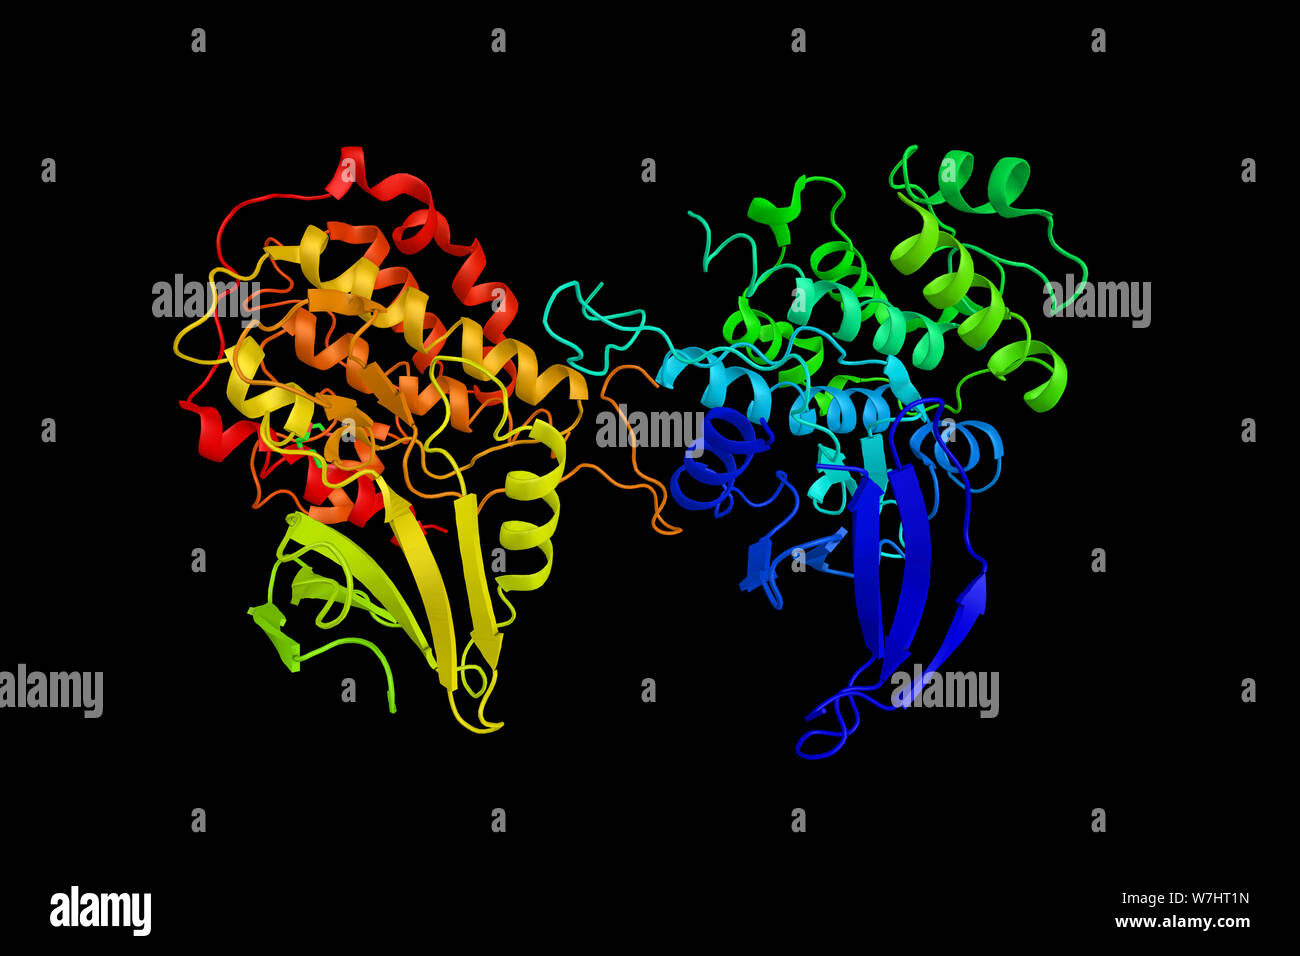 Ribosomale Protein S6 Kinase alpha-1, ein Enzym, das bei der Kontrolle von Zellwachstum und Differenzierung impliziert. 3D-Rendering. Stockfoto